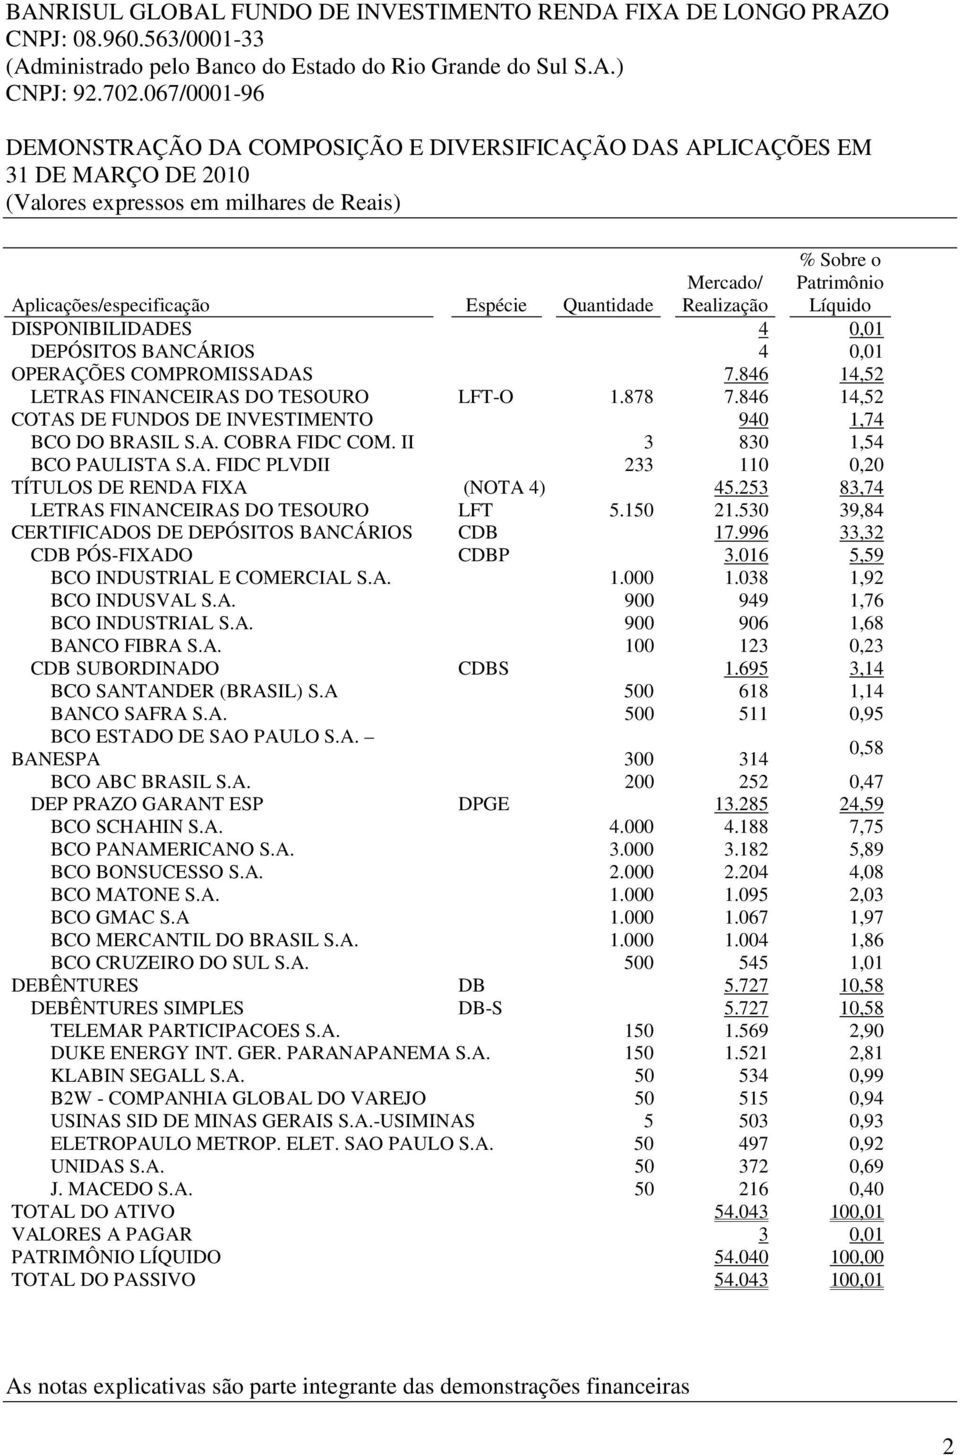 Realização Patrimônio Líquido DISPONIBILIDADES 4 0,01 DEPÓSITOS BANCÁRIOS 4 0,01 OPERAÇÕES COMPROMISSADAS 7.846 14,52 LETRAS FINANCEIRAS DO TESOURO LFT-O 1.878 7.